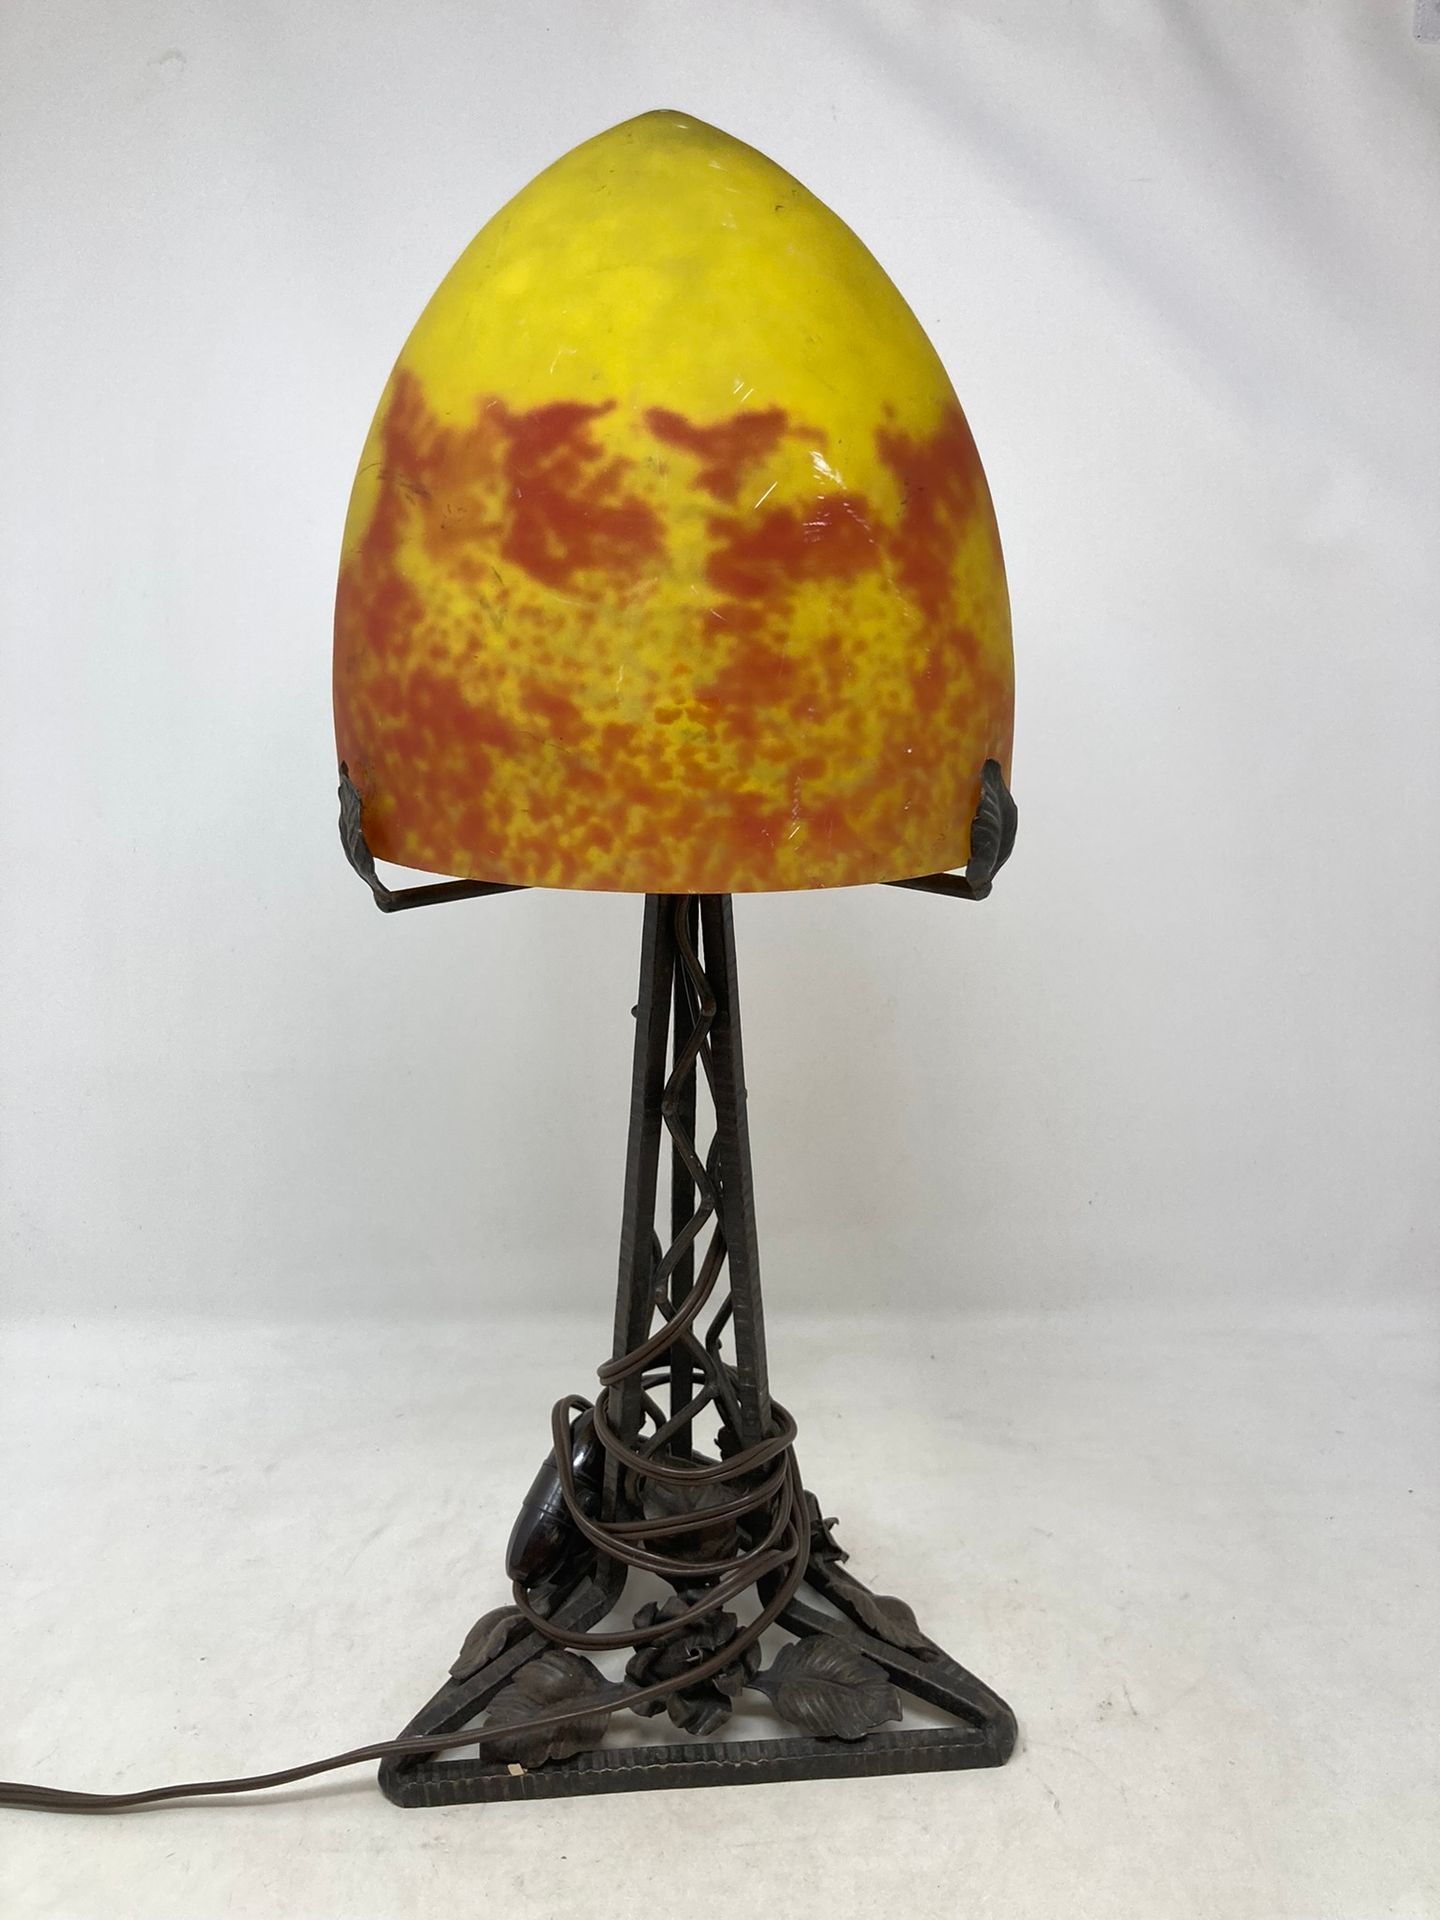 Null 大的橙色和黄色狨猴玻璃蘑菇灯，在一个带花饰的锻铁底座上。

H.46厘米